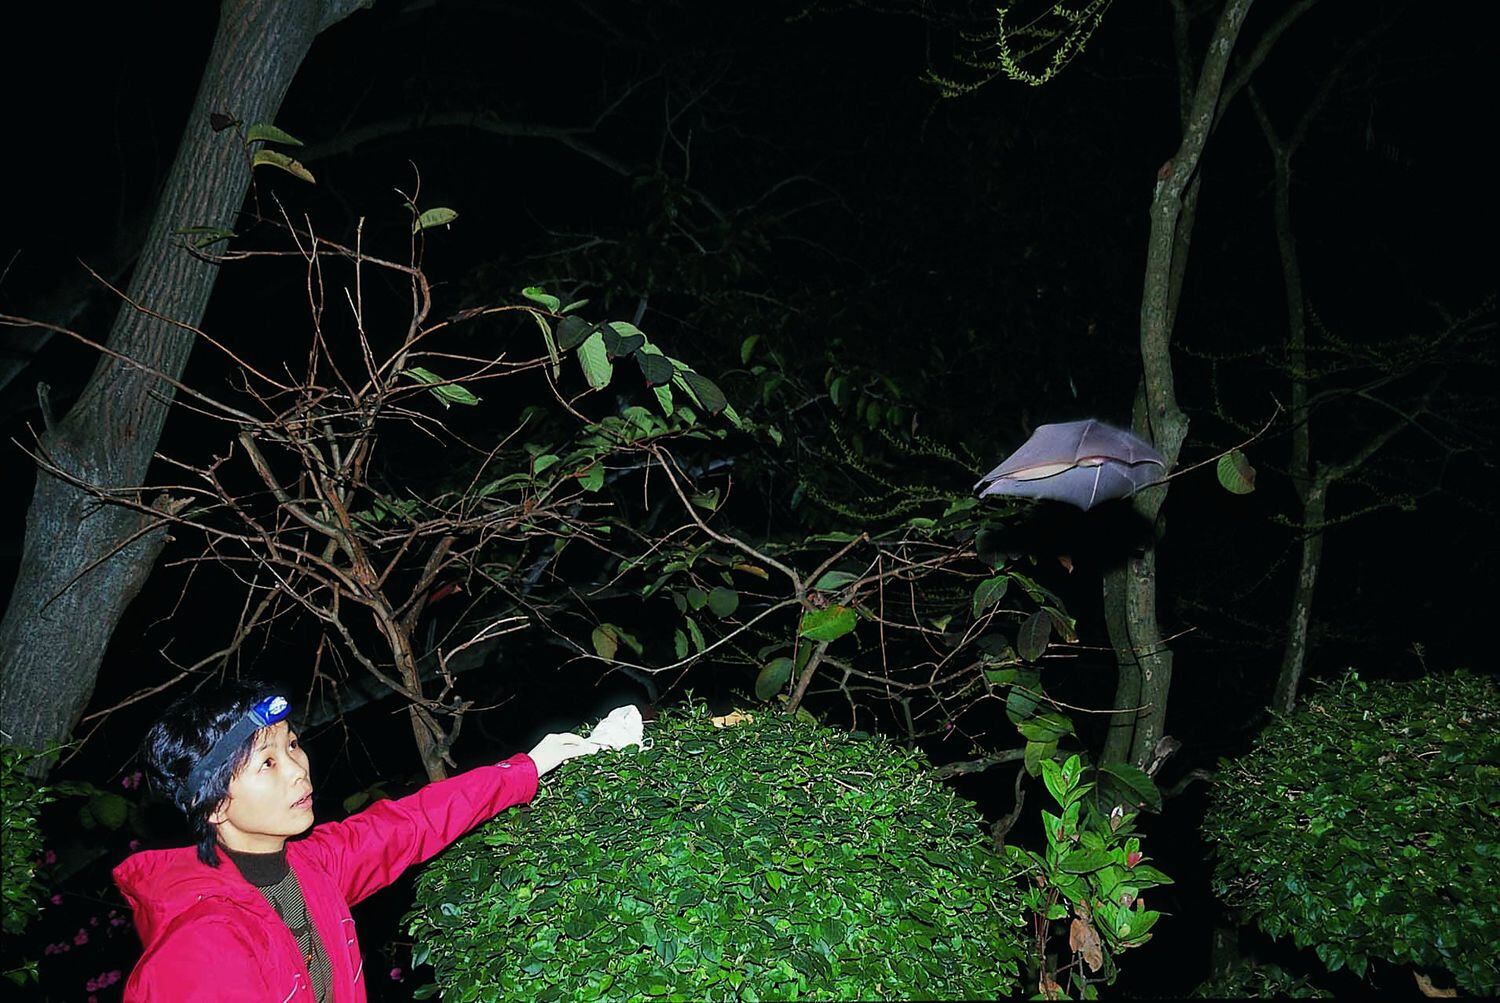 A virologista Shi Zhengli libera um morcego de uma caverna chinesa depois de lhe tirar sangue, em 2004.